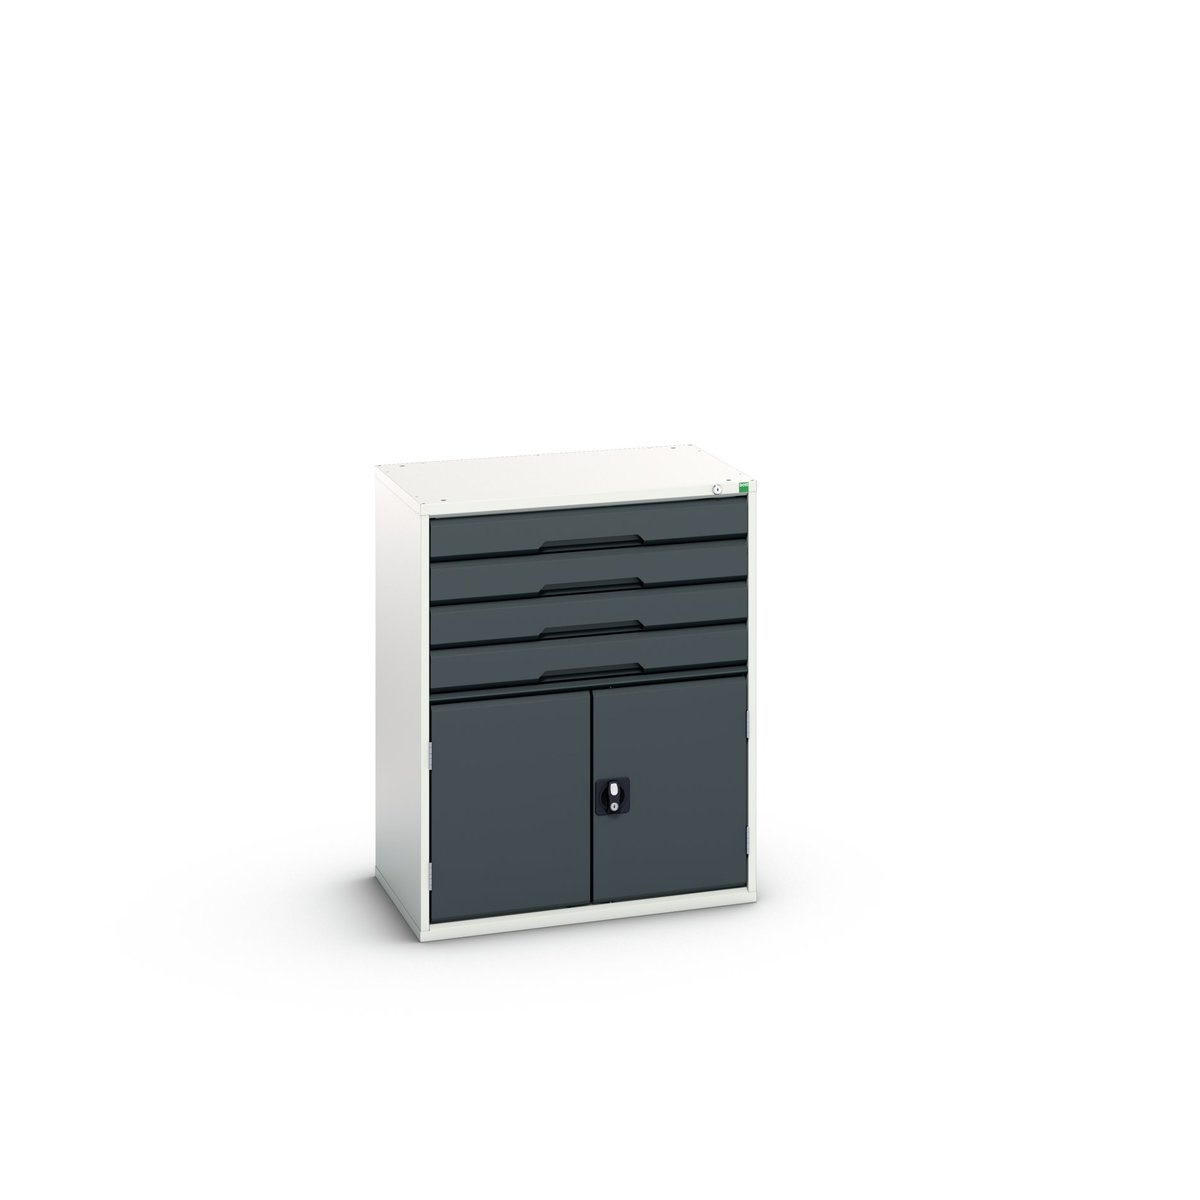 16925465. - verso drawer-door cabinet